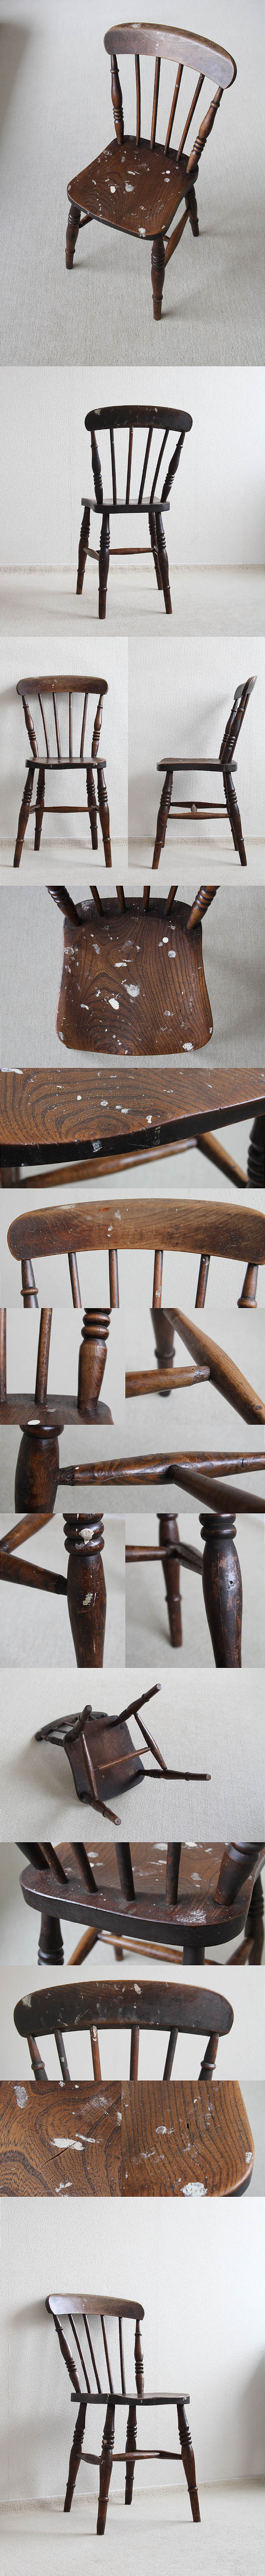 イギリス アンティーク キッチンチェア 古木 木製椅子 家具 インテリア「一枚板座面」P-087